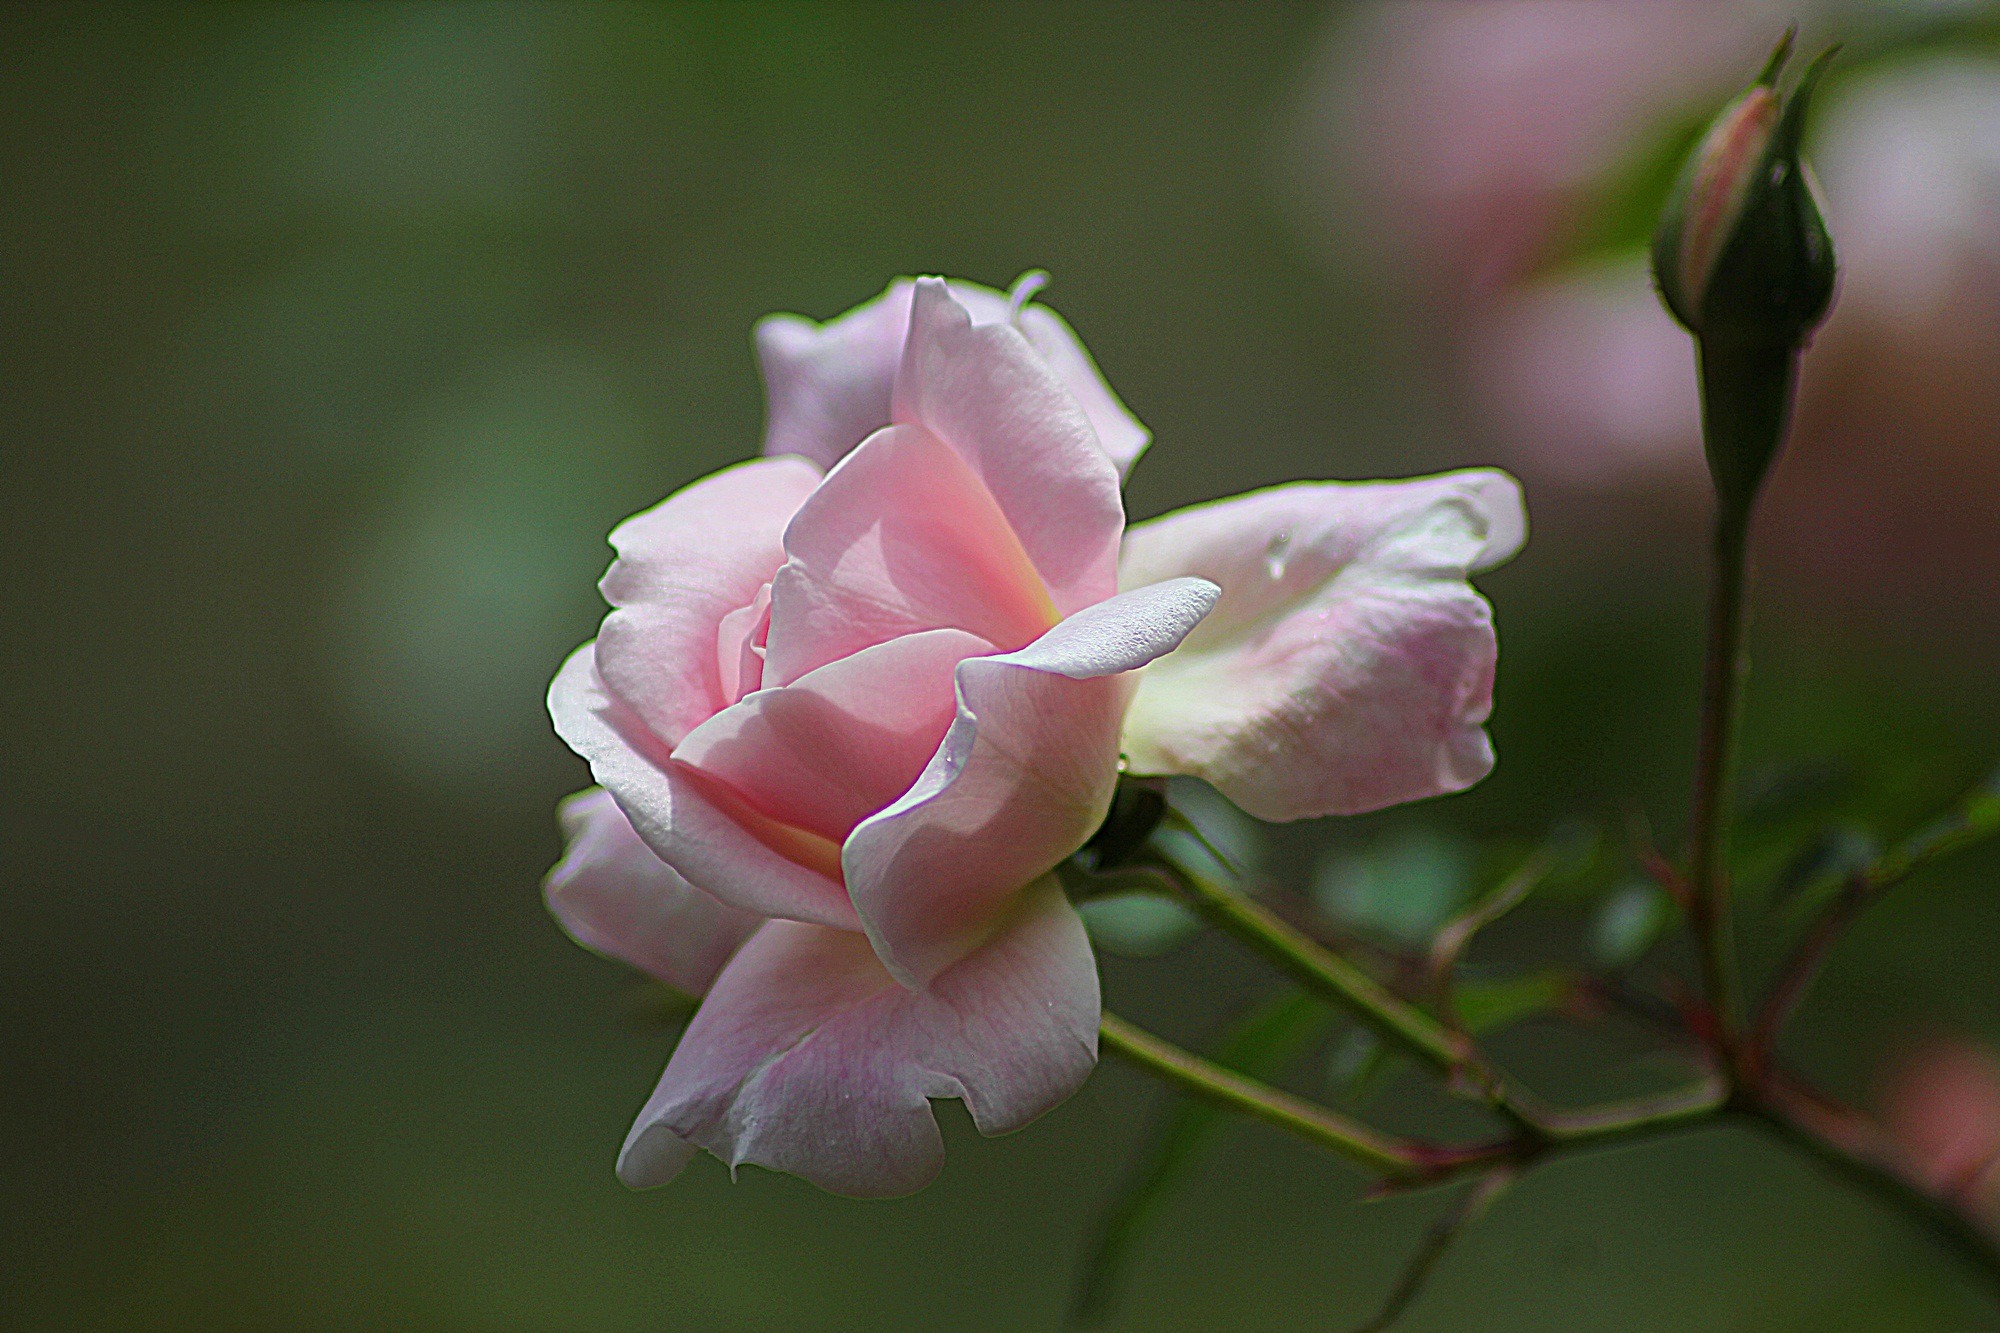 A soft pink wild rose